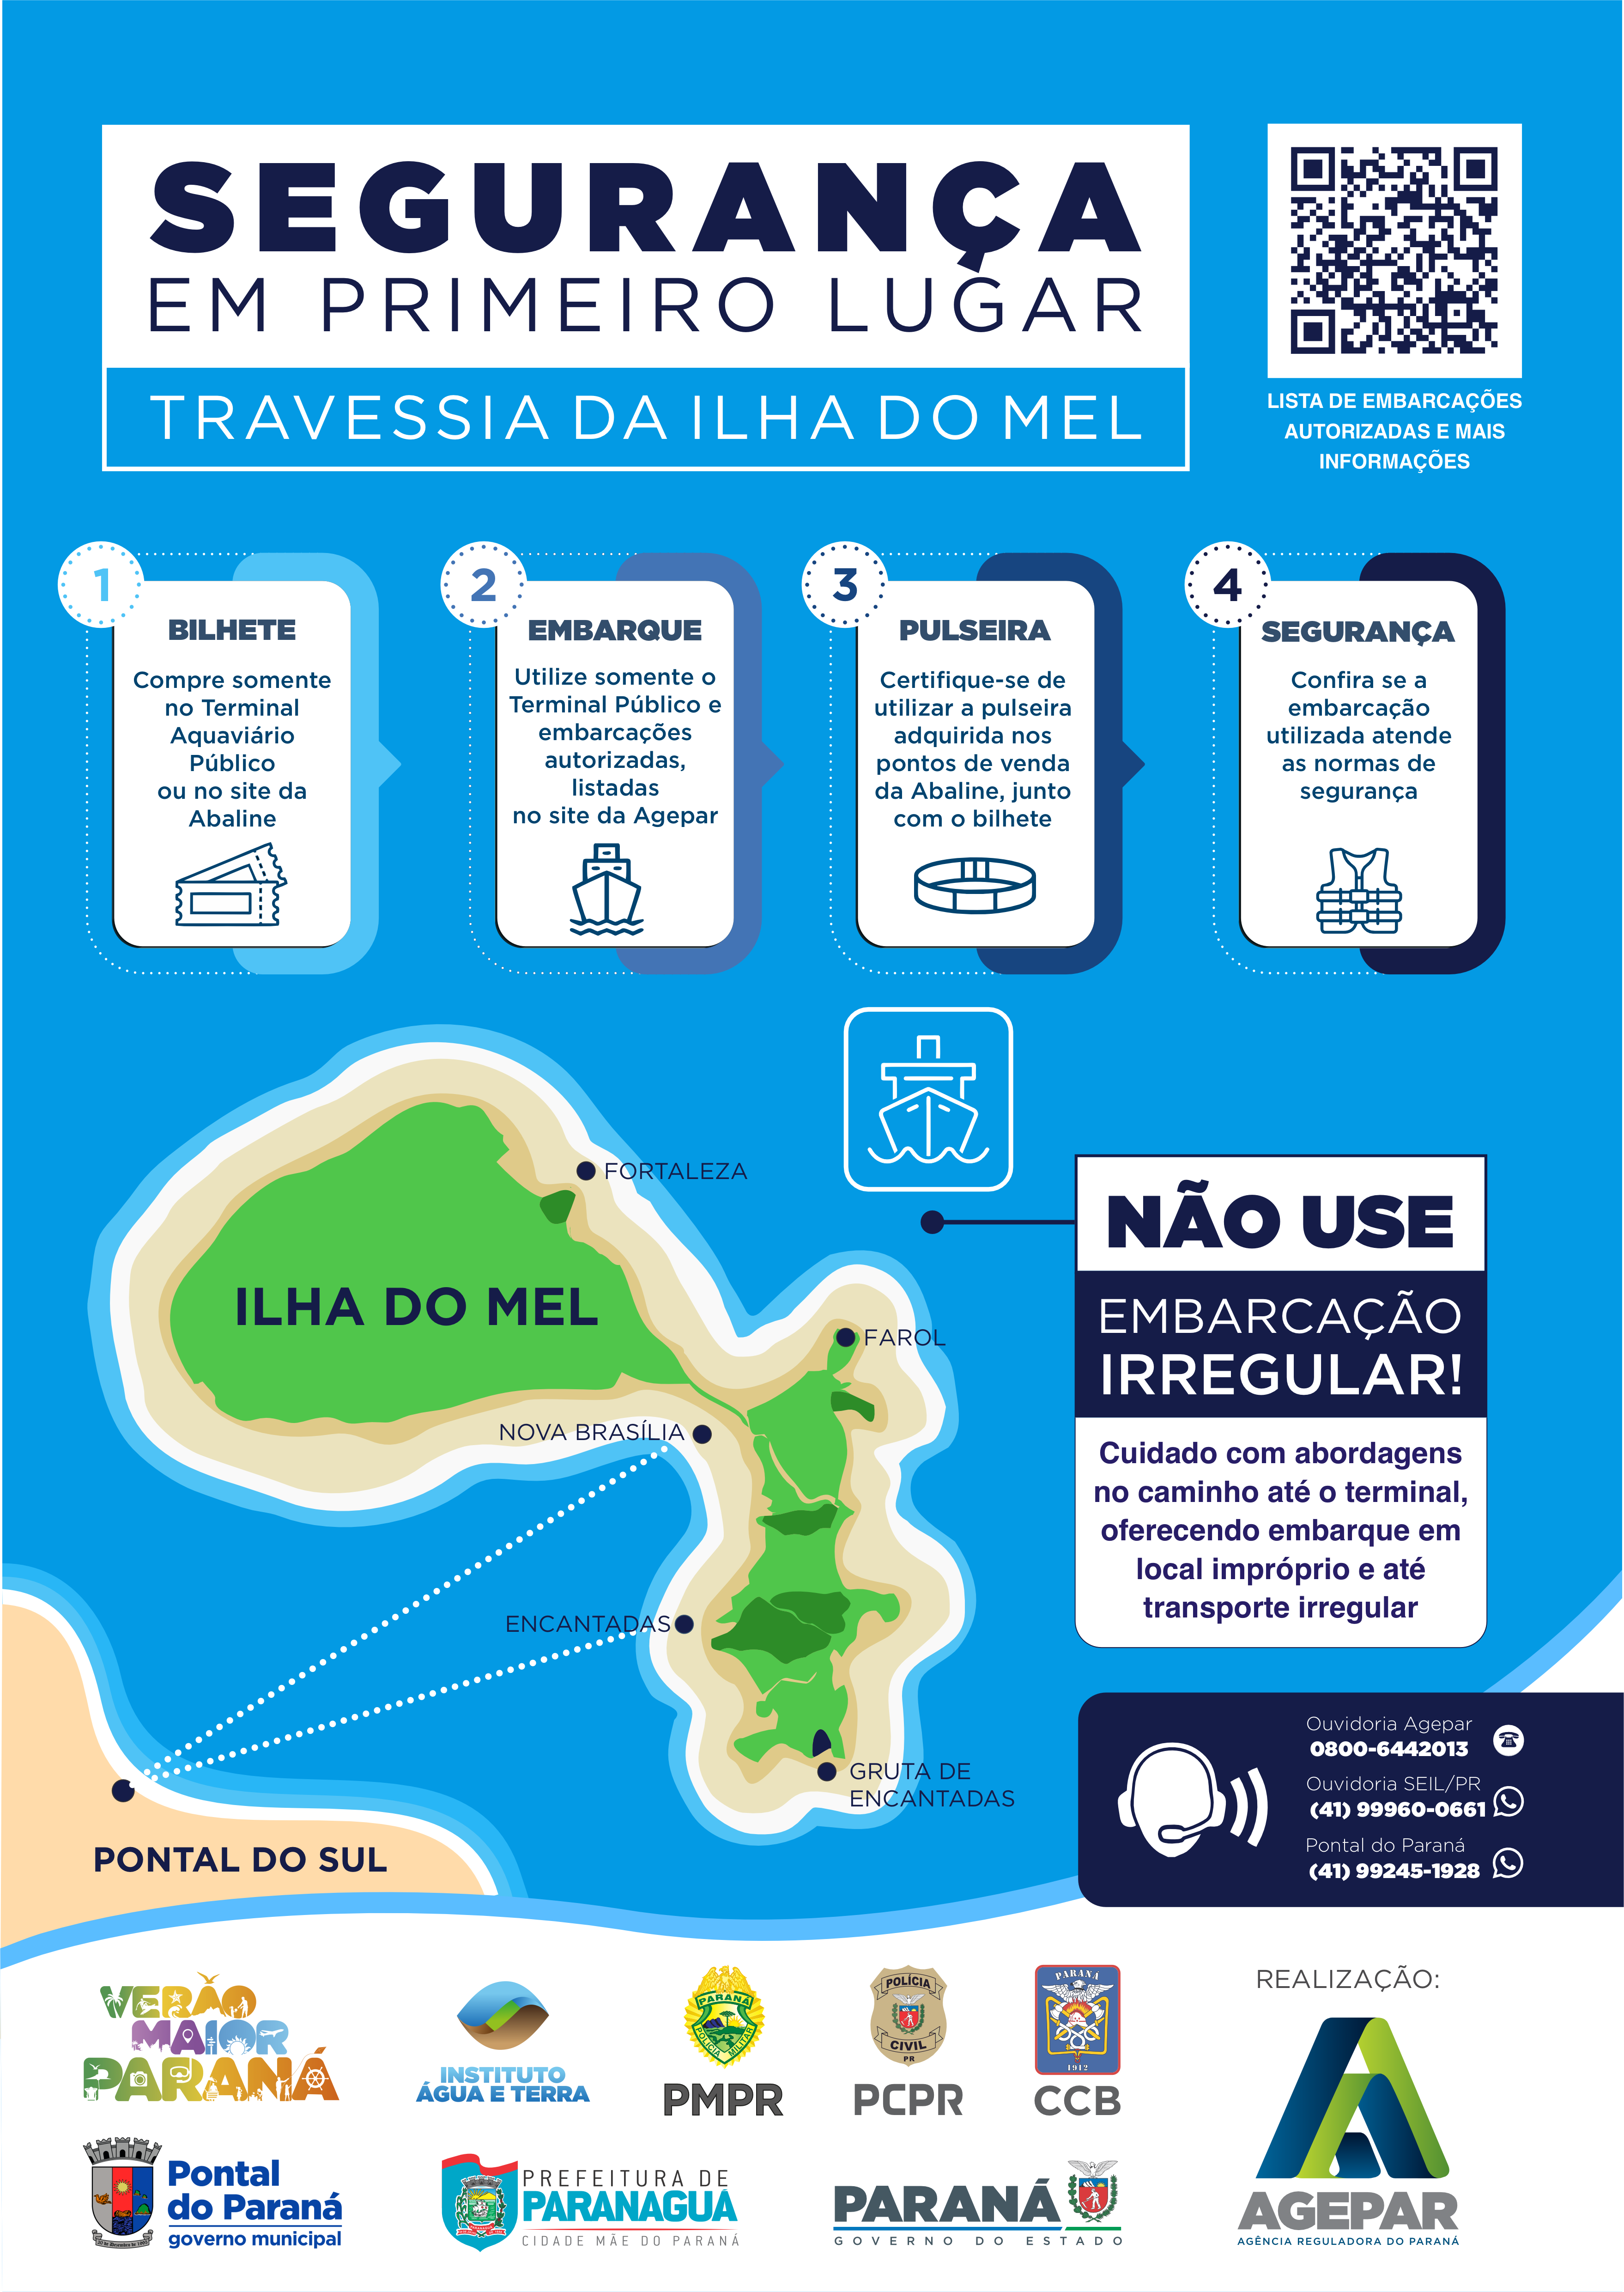 Agepar lança campanha de conscientização para usuários da travessia da Ilha do Mel